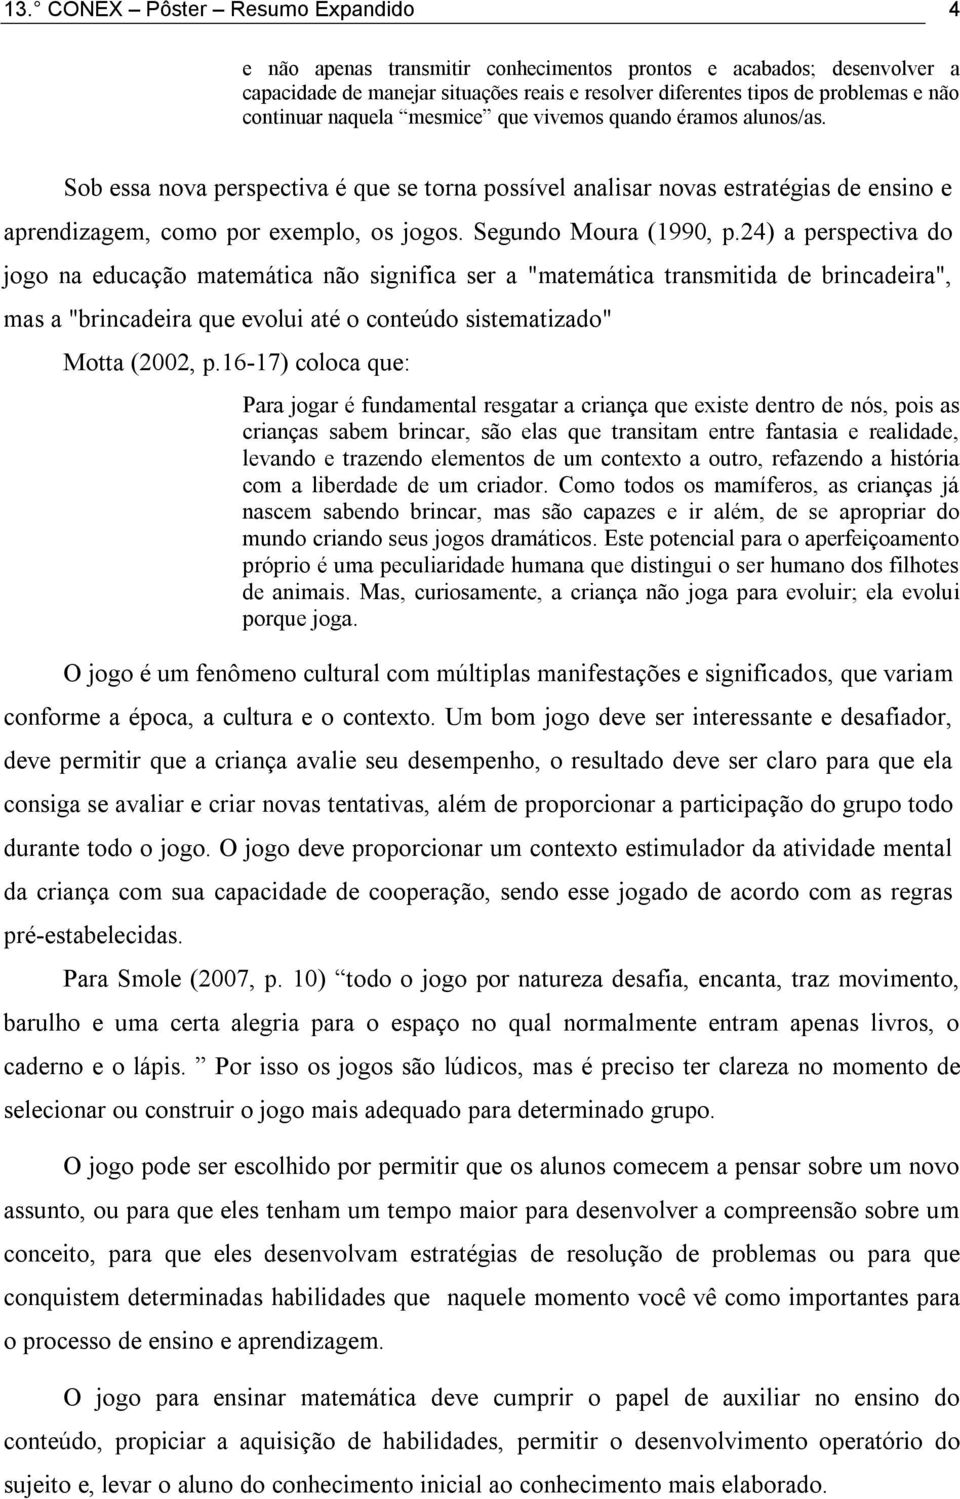 Segundo Moura (1990, p.